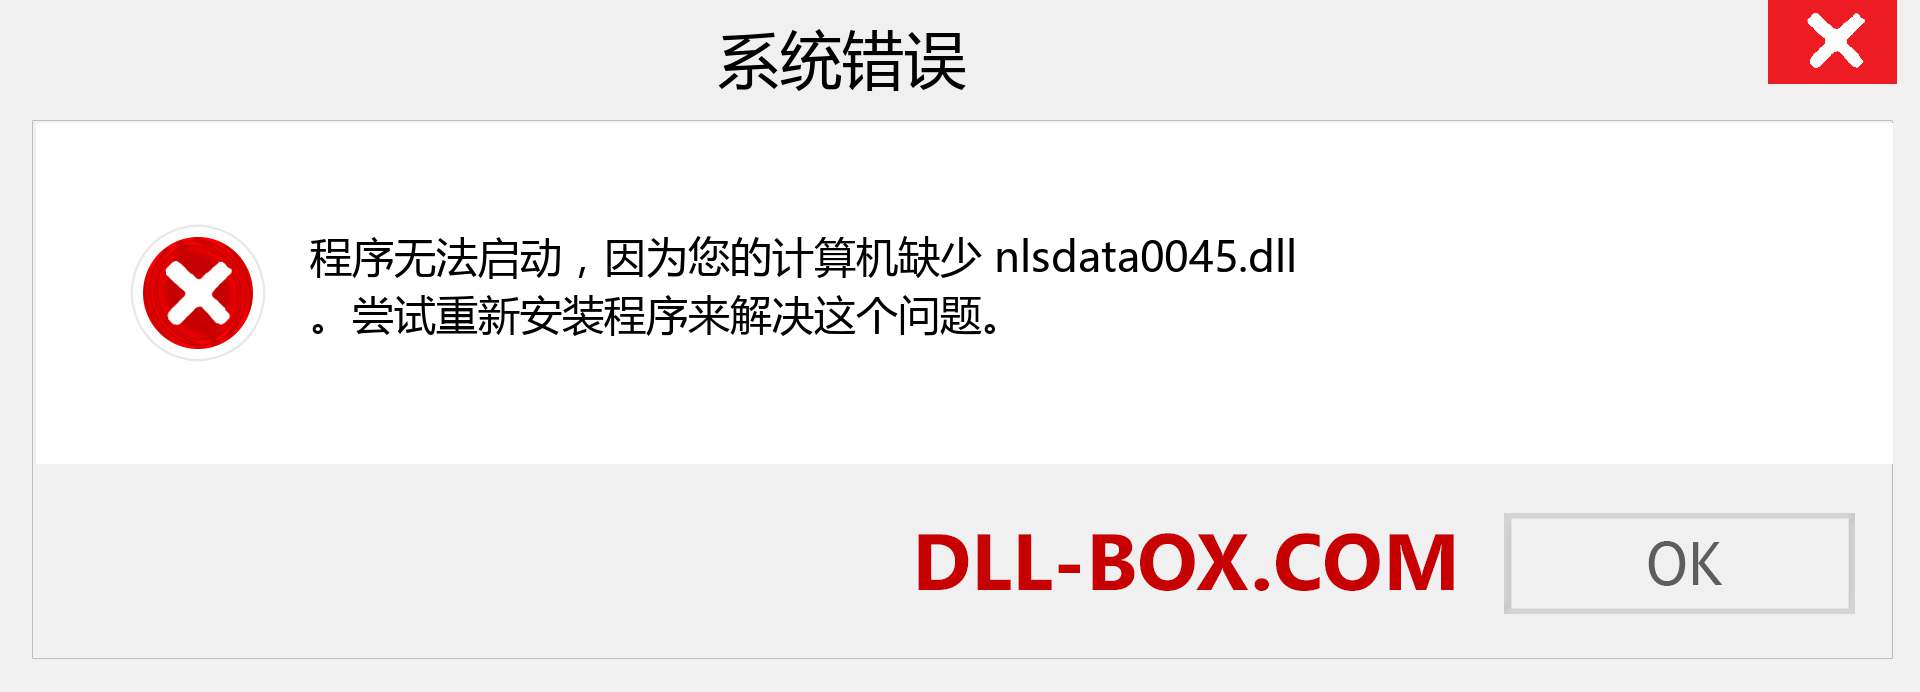 nlsdata0045.dll 文件丢失？。 适用于 Windows 7、8、10 的下载 - 修复 Windows、照片、图像上的 nlsdata0045 dll 丢失错误